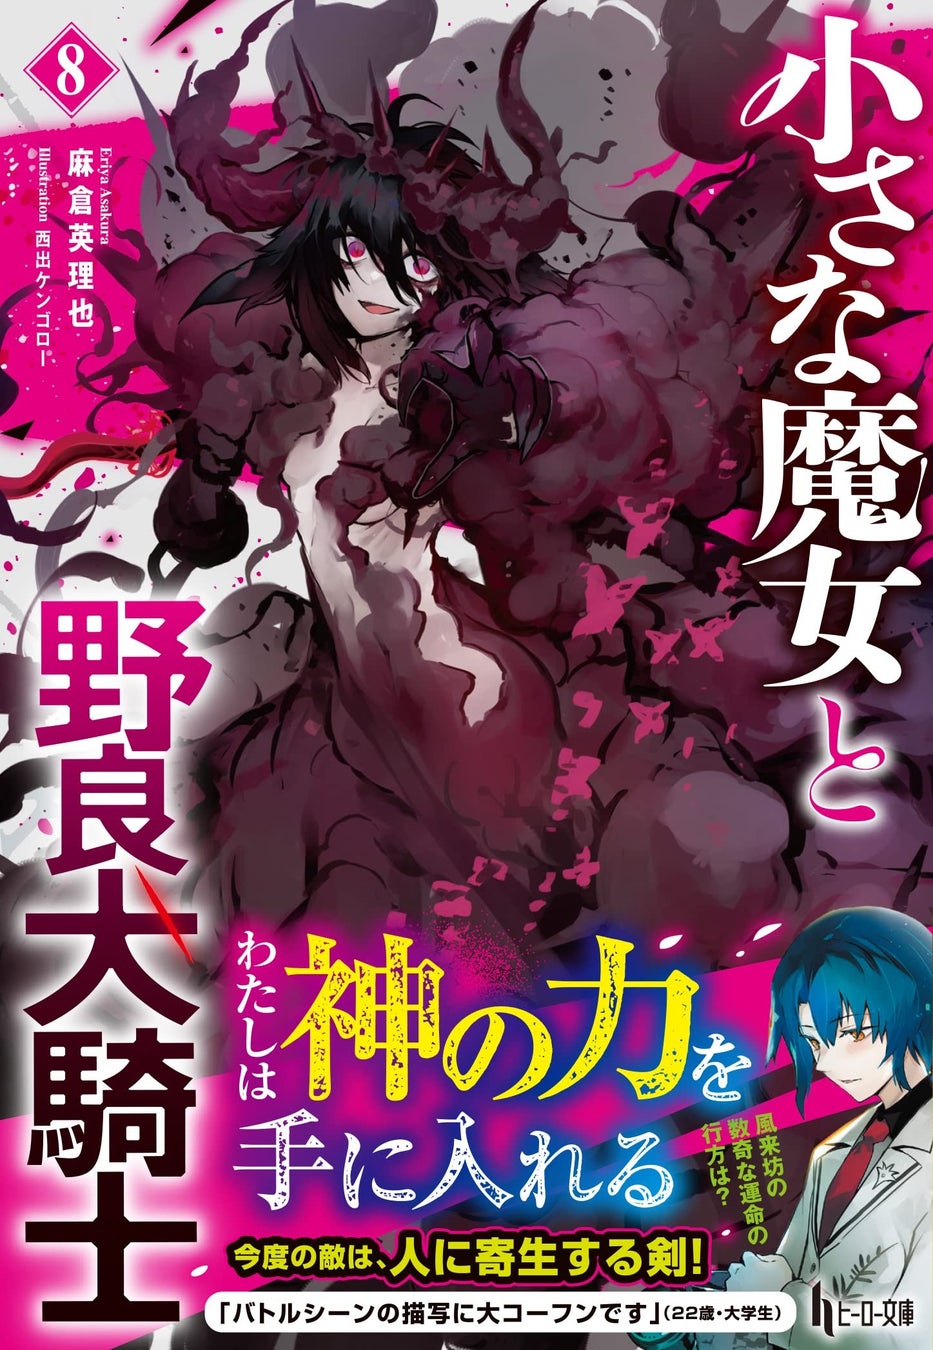 内田彩ナレーションによるPVが公開。『小さな魔女と野良犬騎士 8』がヒーロー文庫より発売